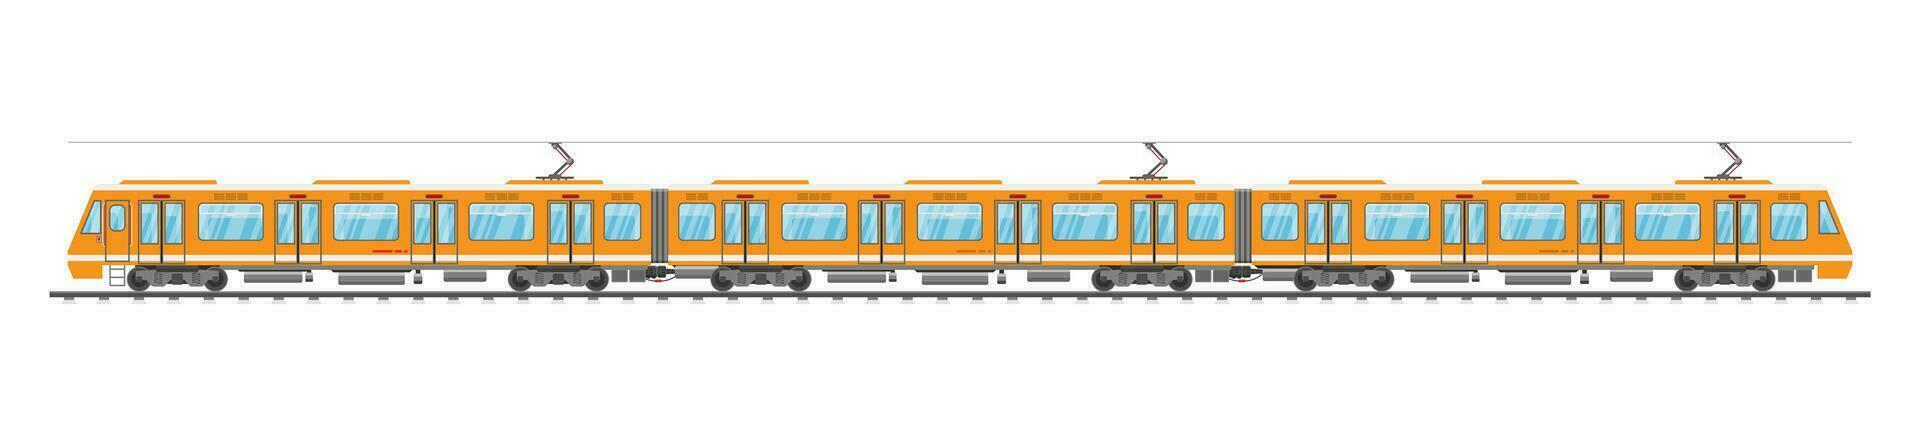 detallado subterráneo tren coche aislado. subterraneo ferrocarril coche en blanco. moderno urbano metro. pasajero Rápido ferrocarril. ferrocarril público transporte. rápido transporte. plano vector ilustración